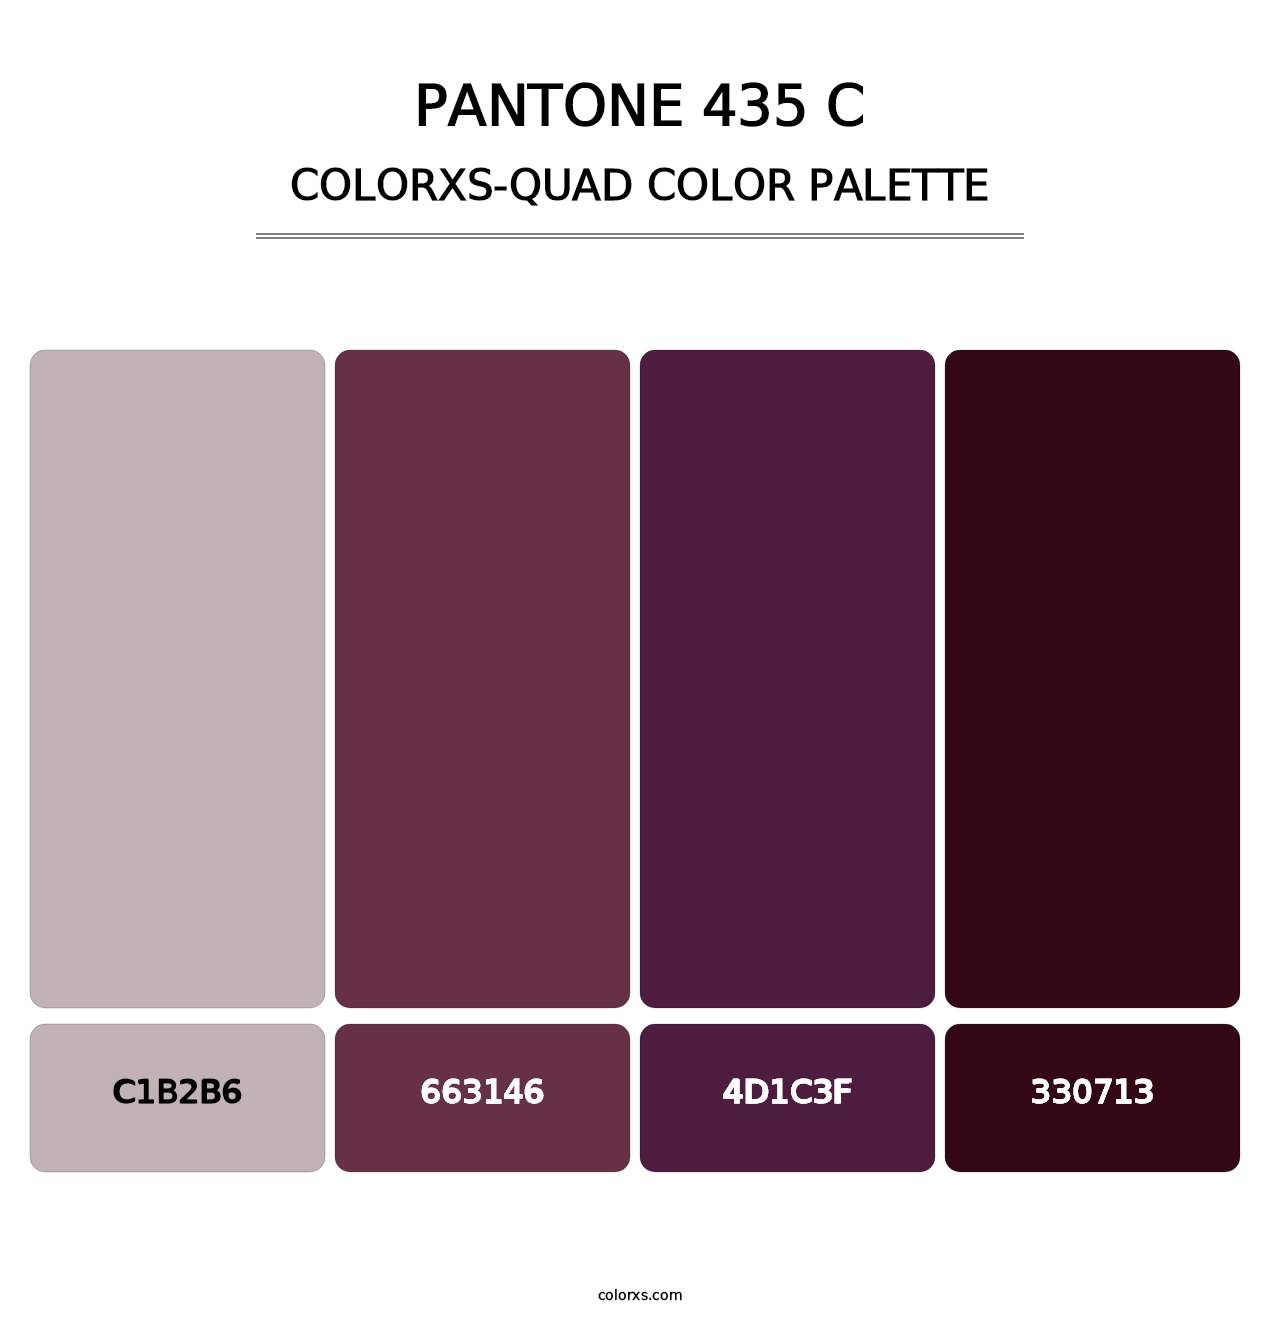 PANTONE 435 C - Colorxs Quad Palette